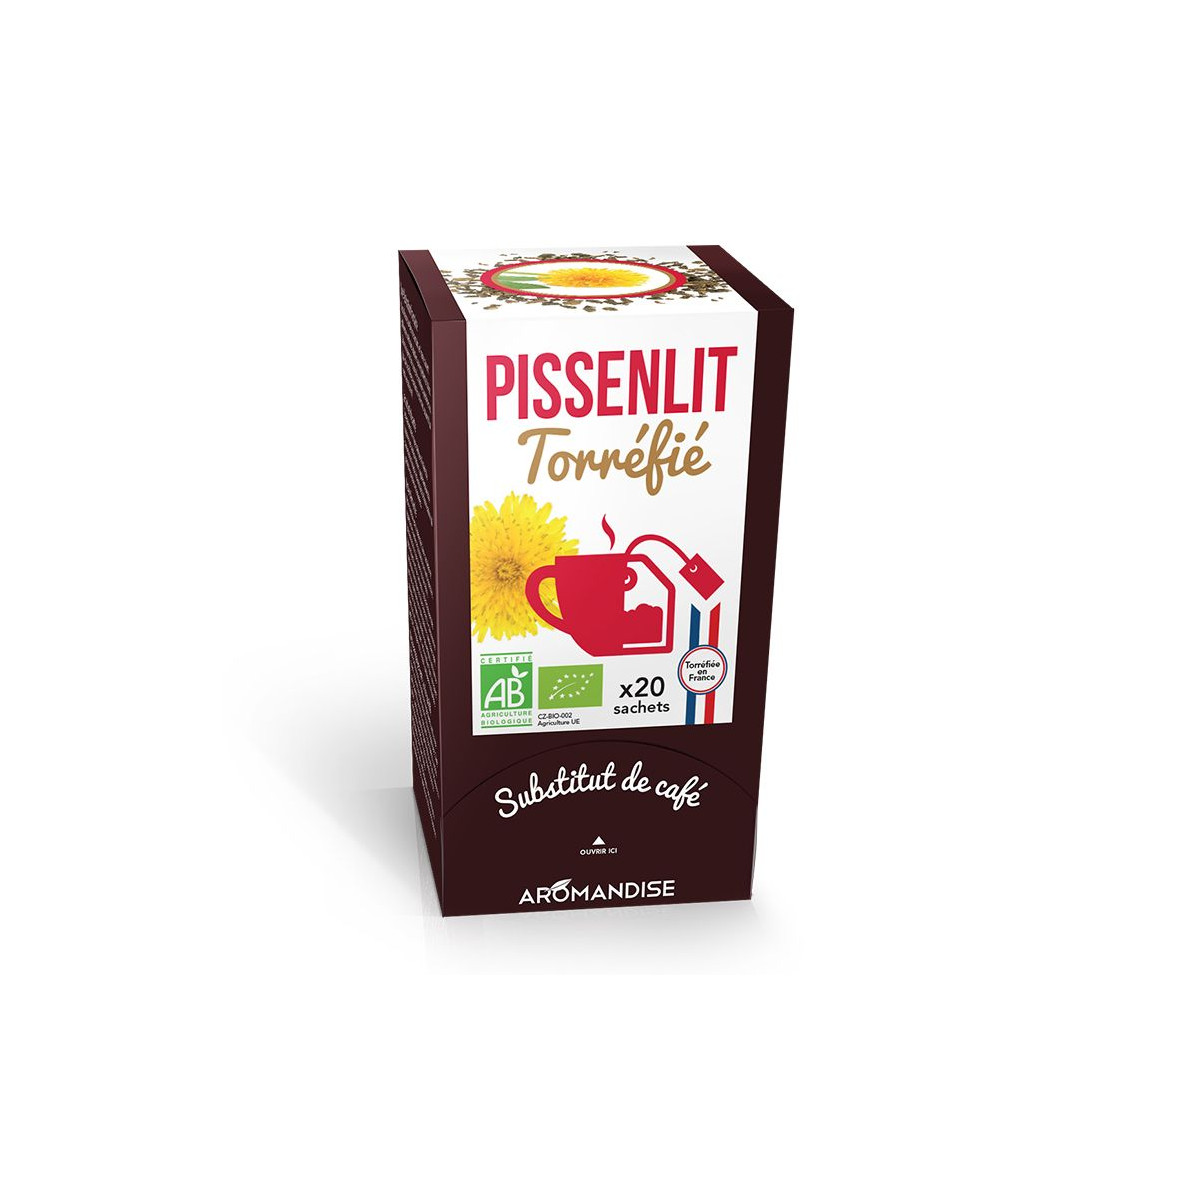 Pissenlit Torréfié - substitut de café - Aromandise - av